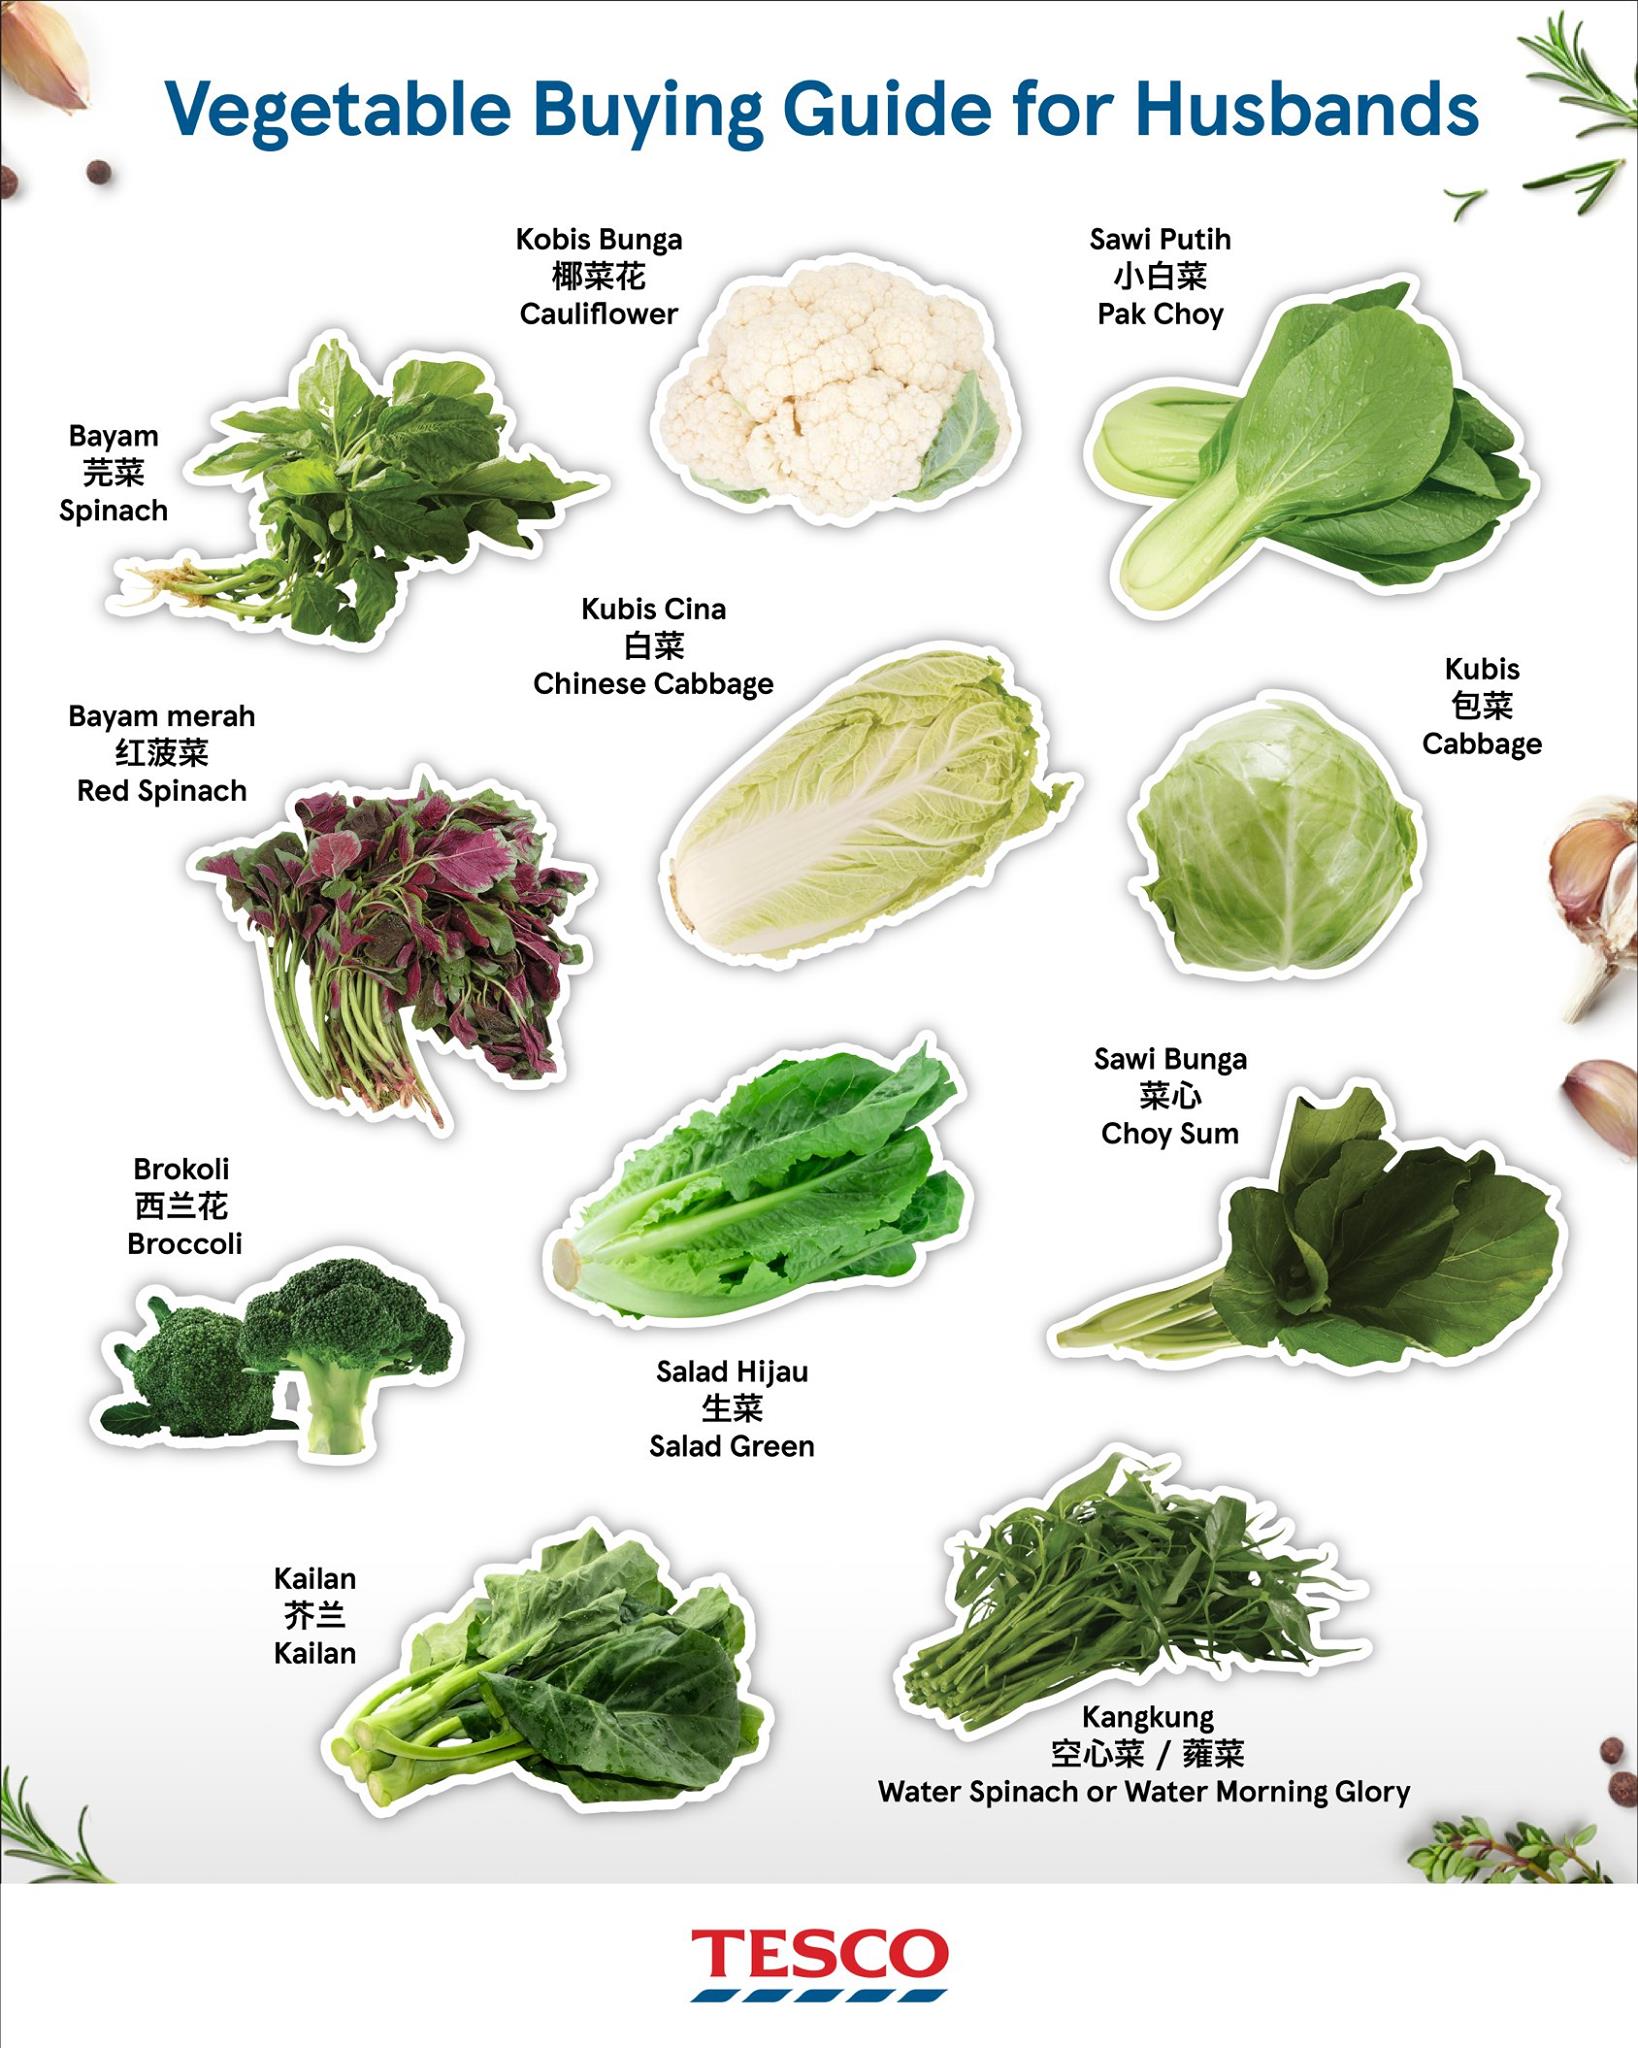 100种蔬菜大全名称图片图片